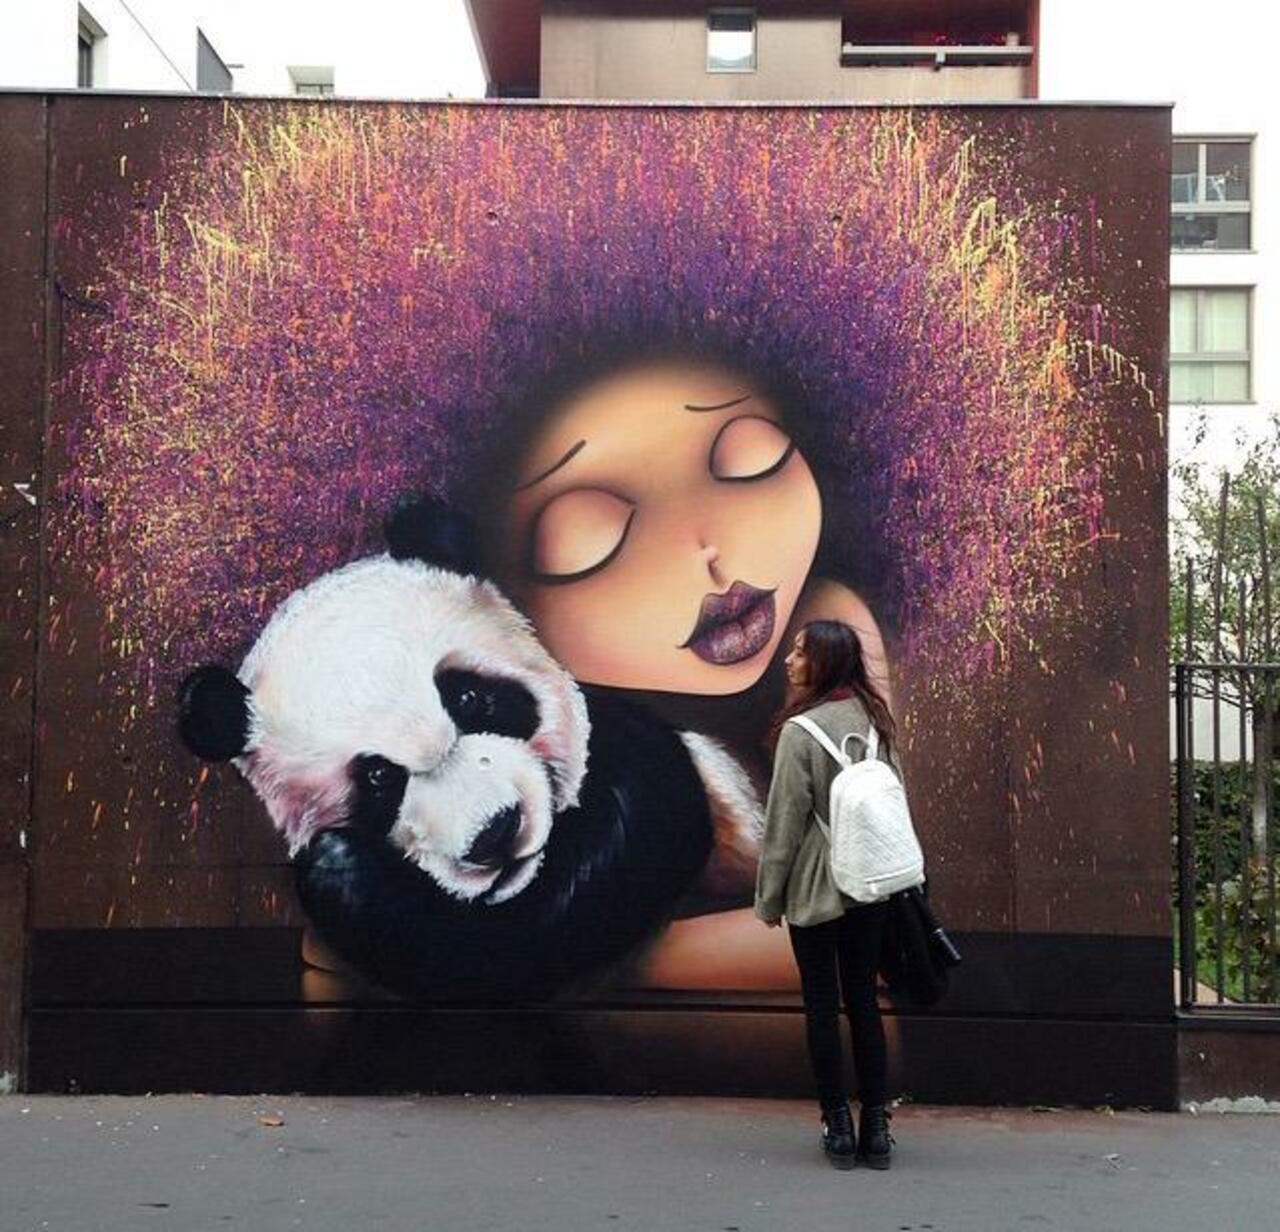 Street Art by VinieGraffiti in Paris 

#art #graffiti #mural #streetart http://t.co/KIZ0juVP6F